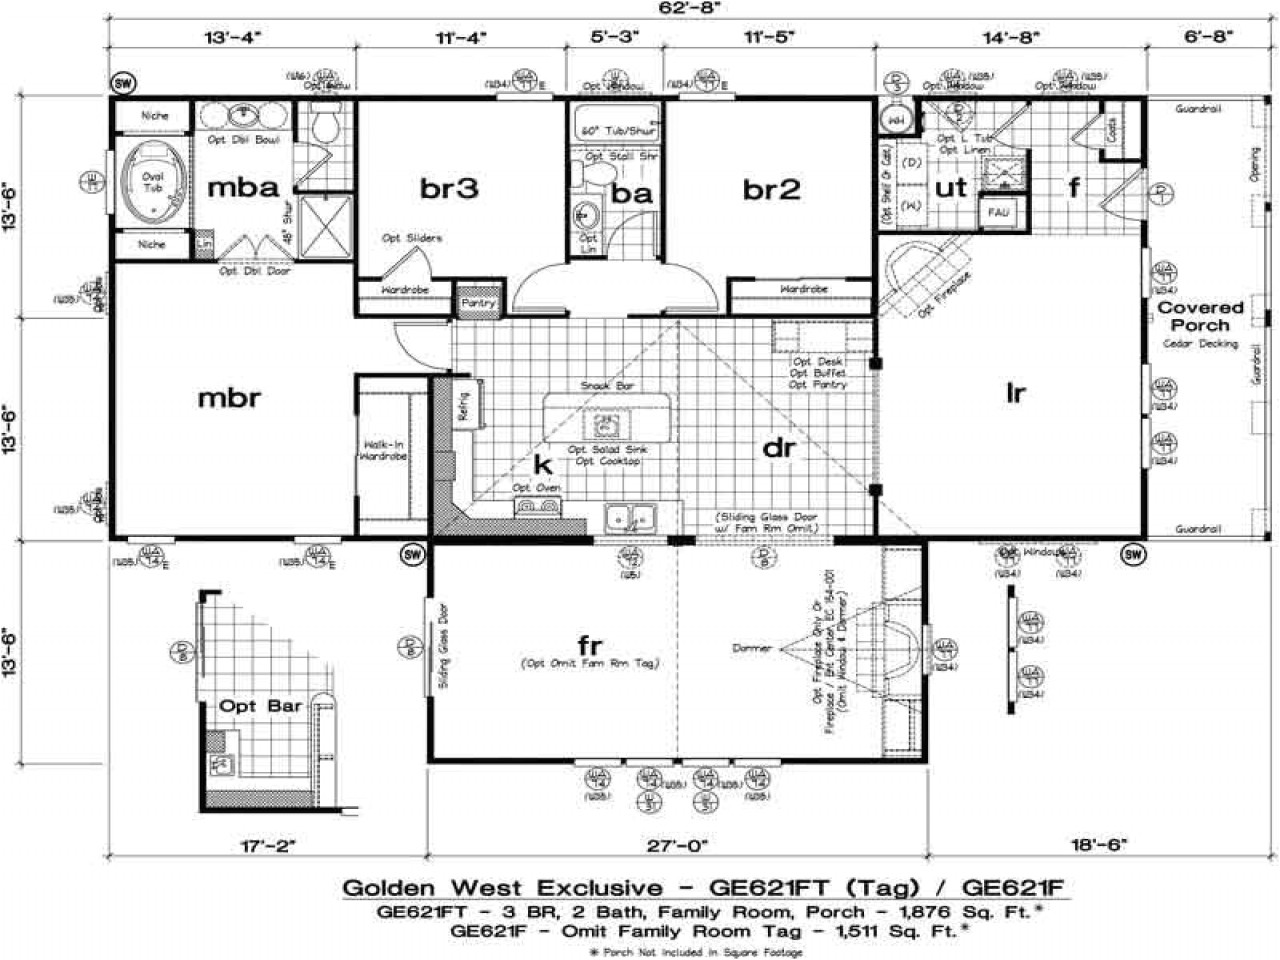 b55793e1b9a6388c used modular homes oregon oregon modular homes floor plans and prices